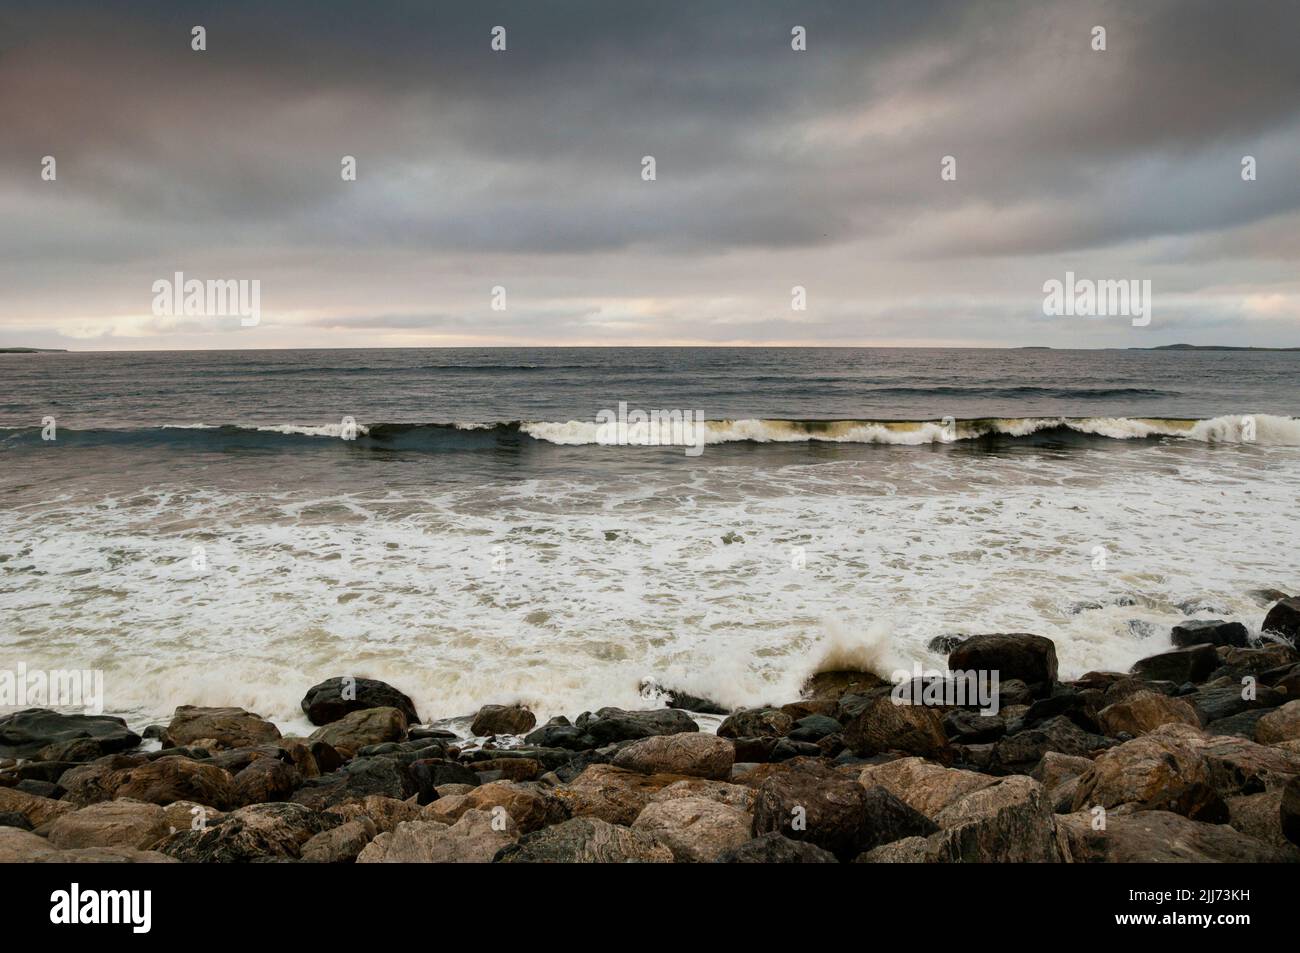 Strandhill Beach in Ireland. Stock Photo